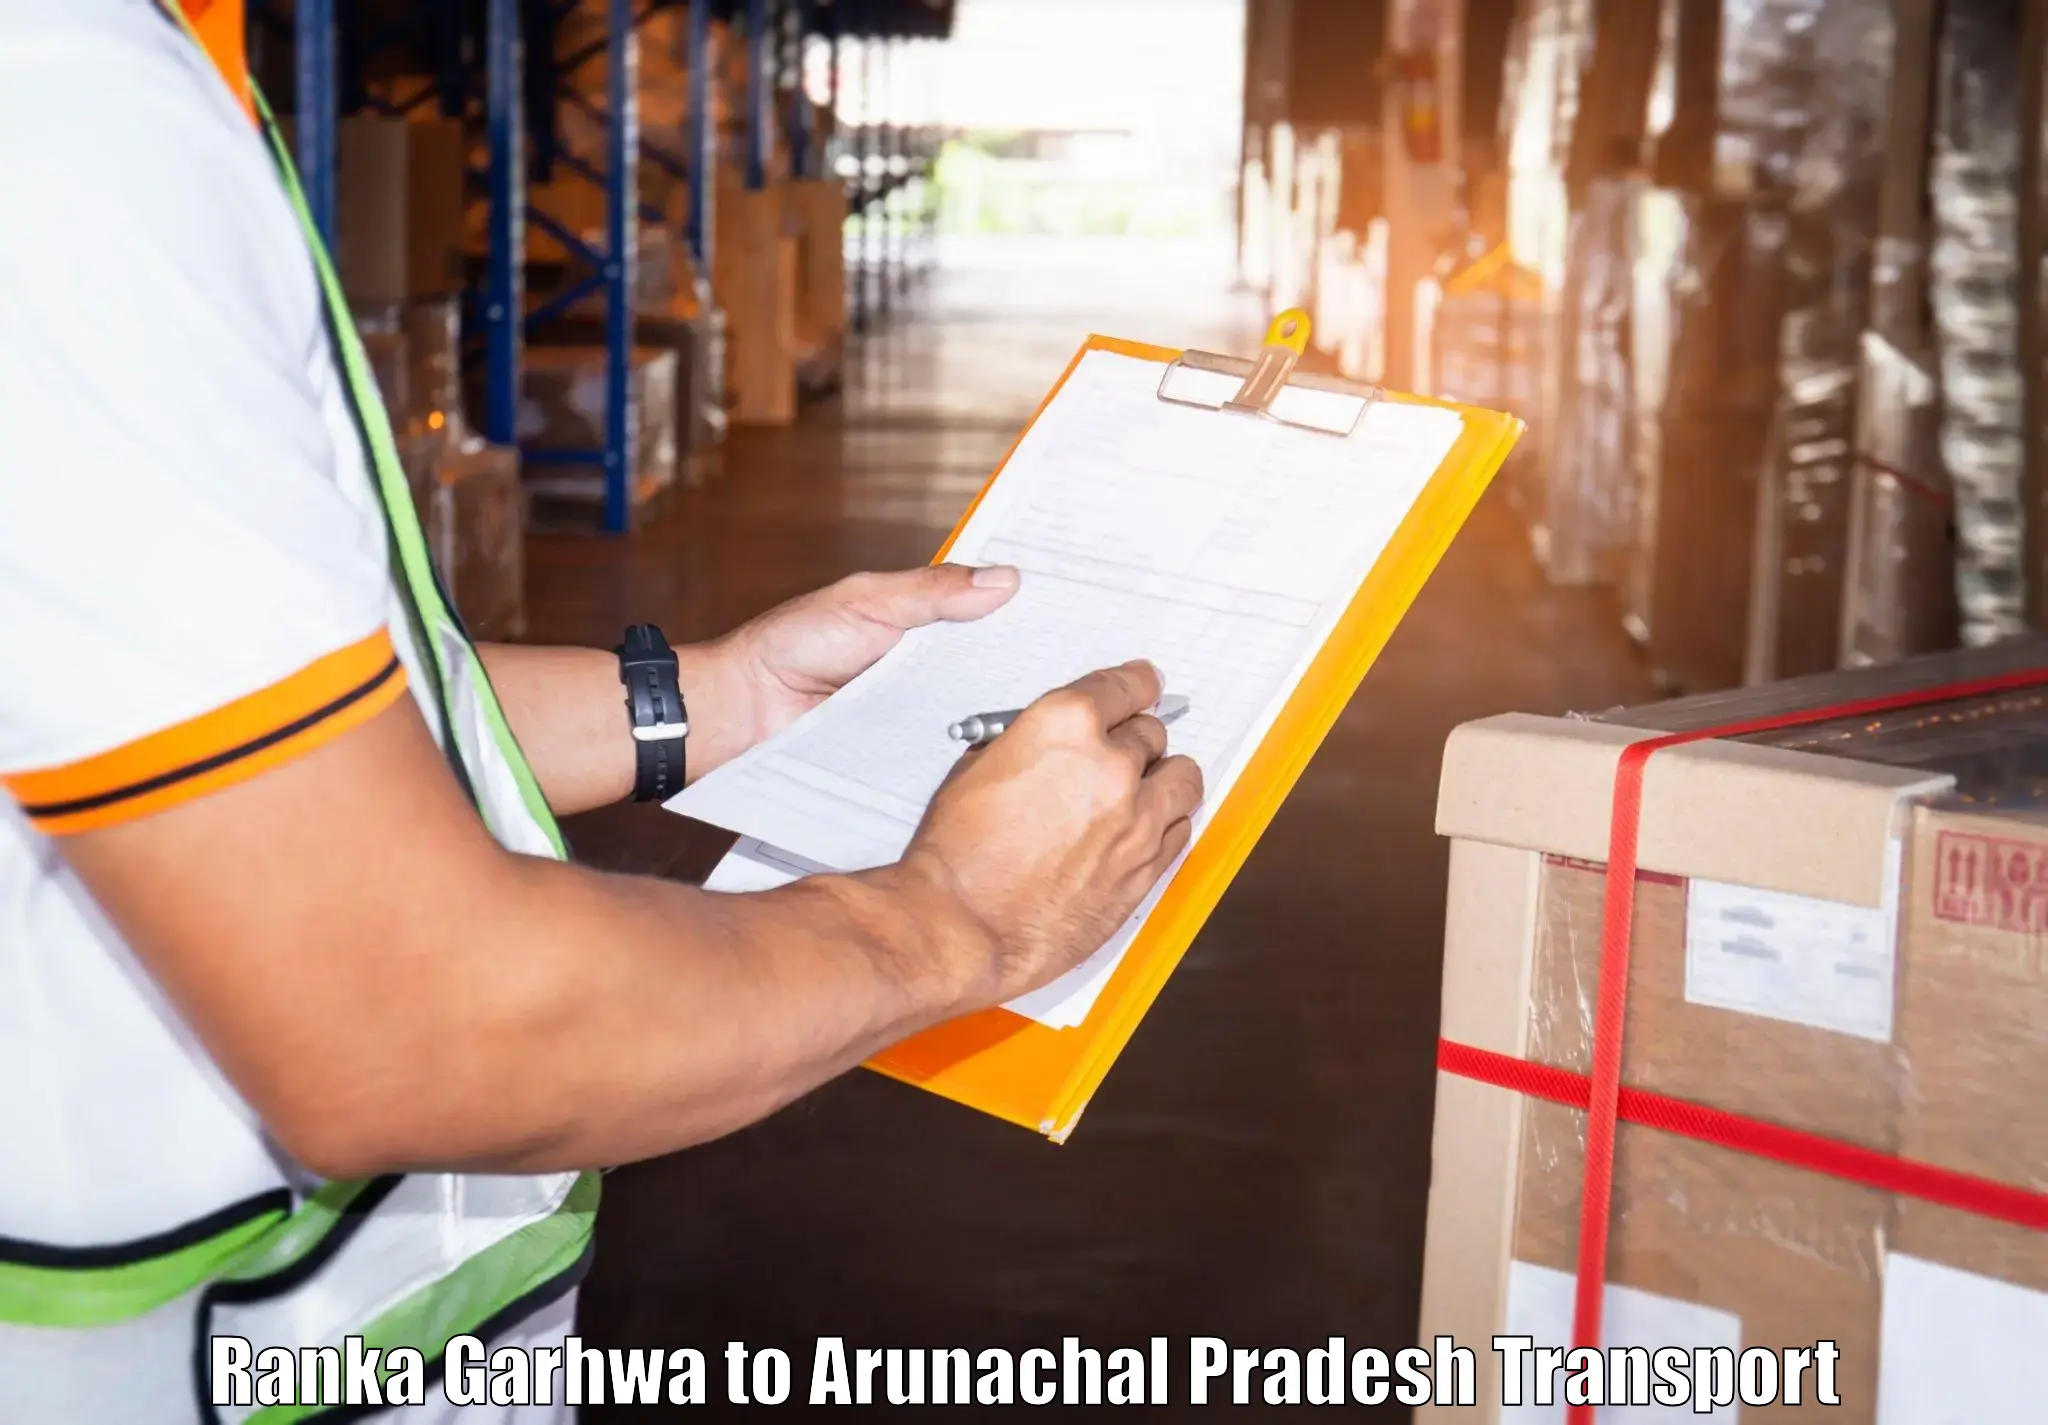 Truck transport companies in India Ranka Garhwa to Upper Subansiri